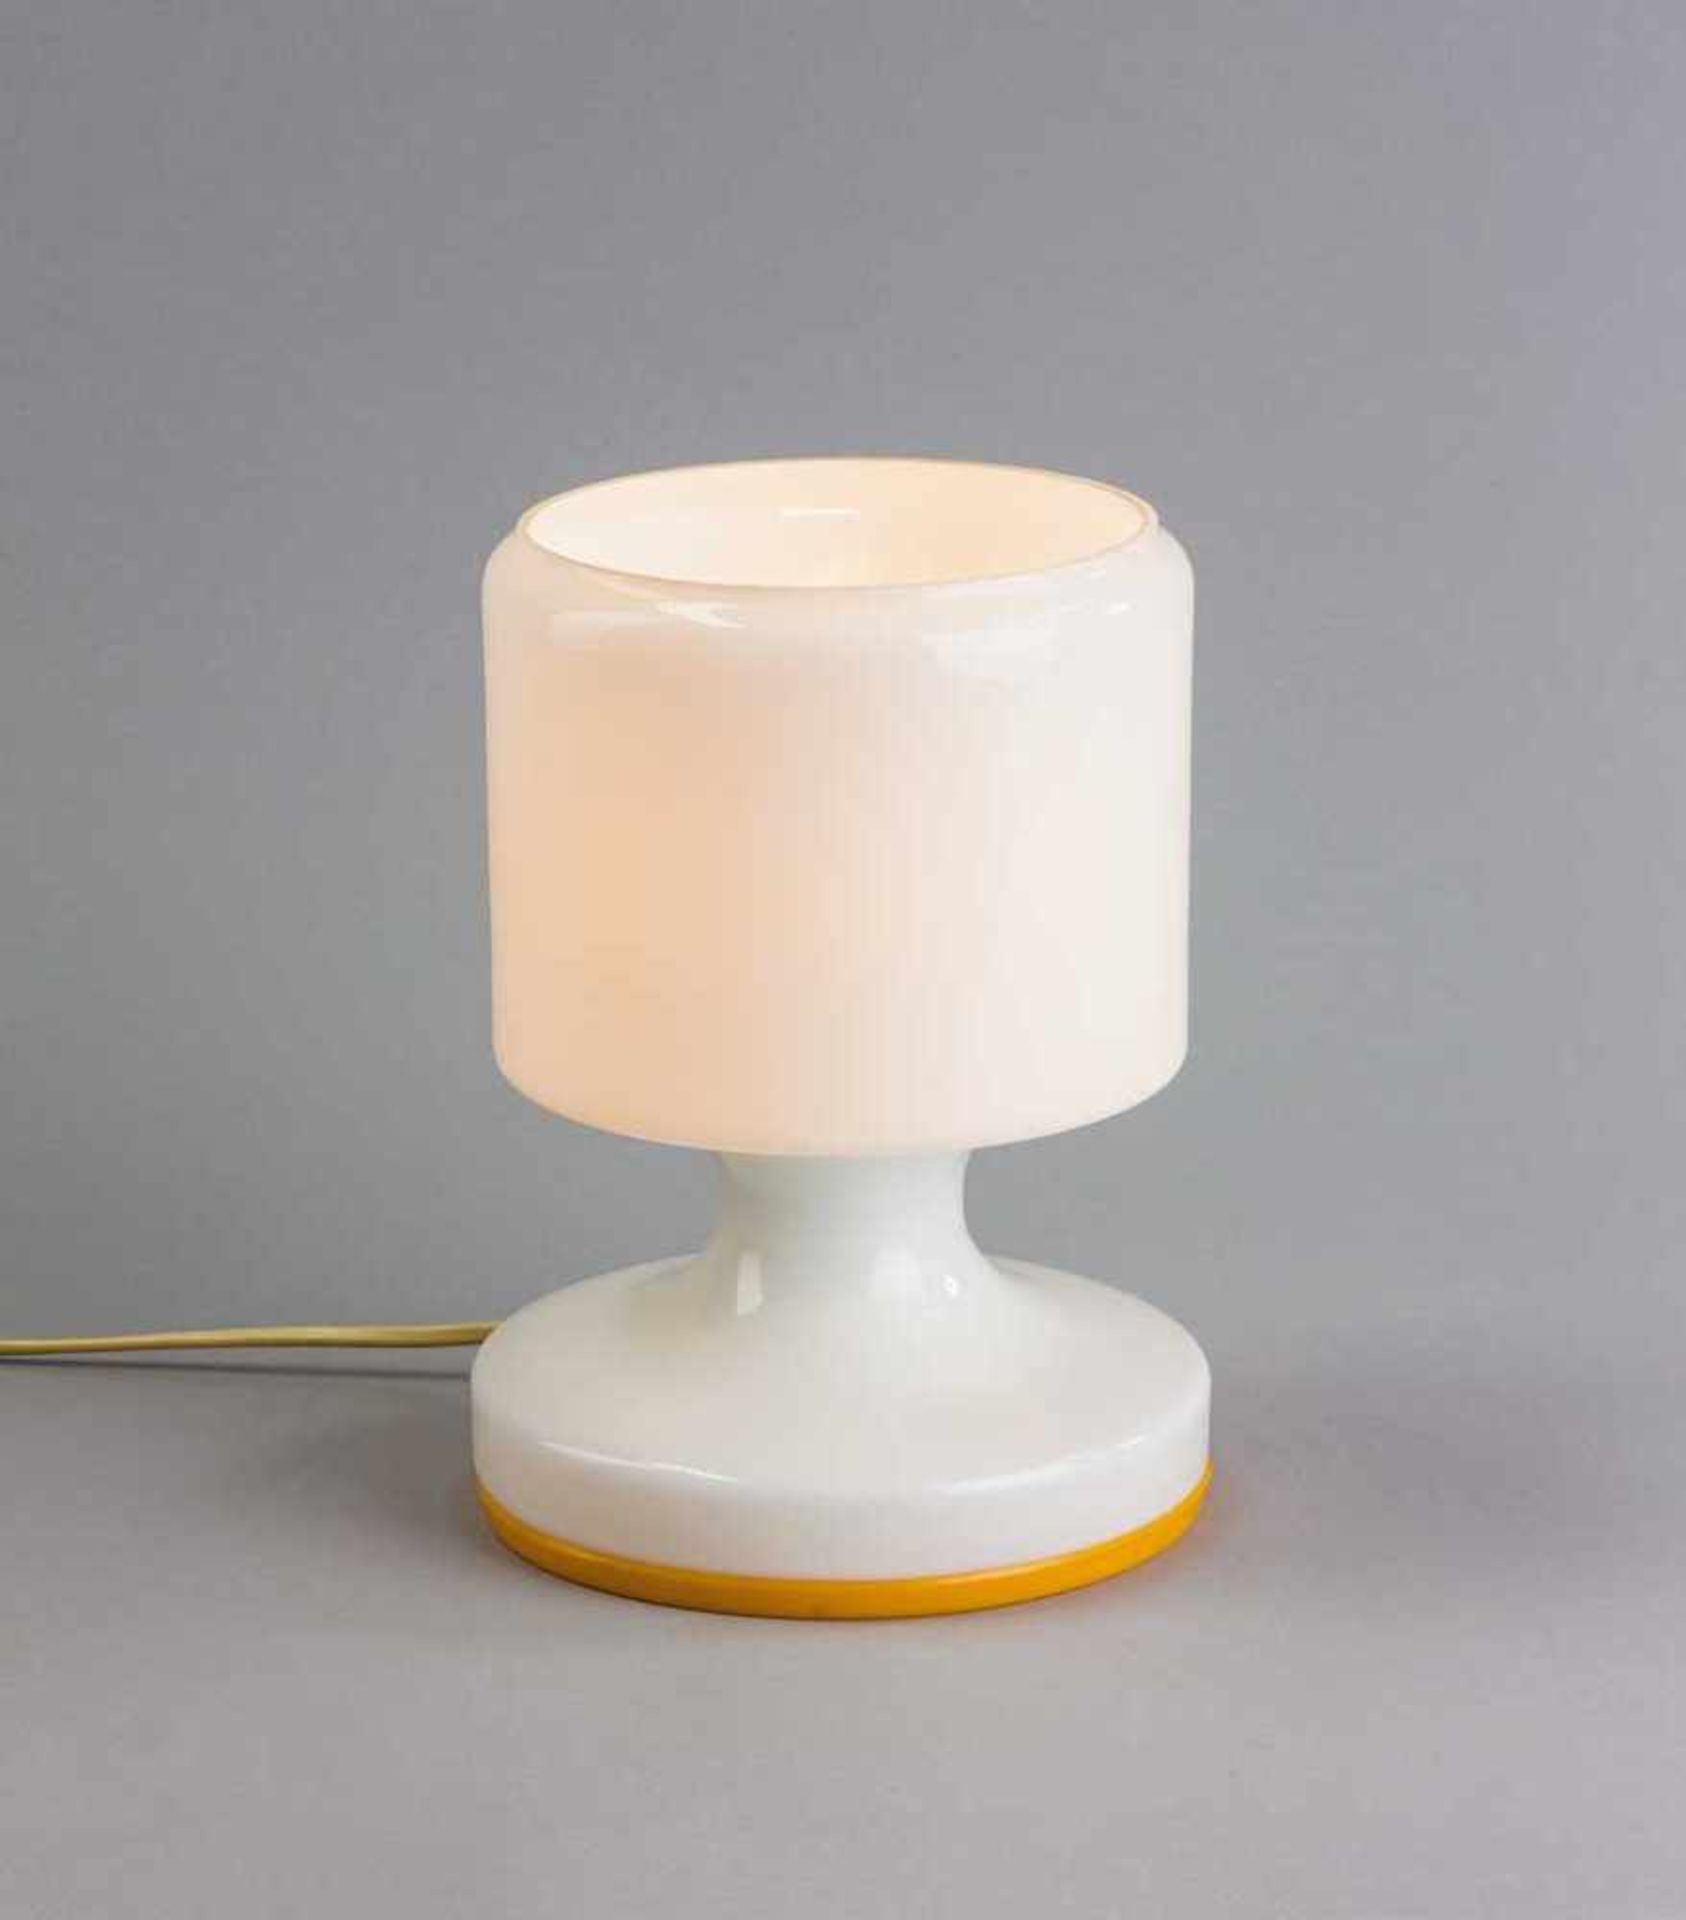 Milchglas-Tischlampe. Kunststoffboden. 1960-er/1970-er Jahre. H 22 cm